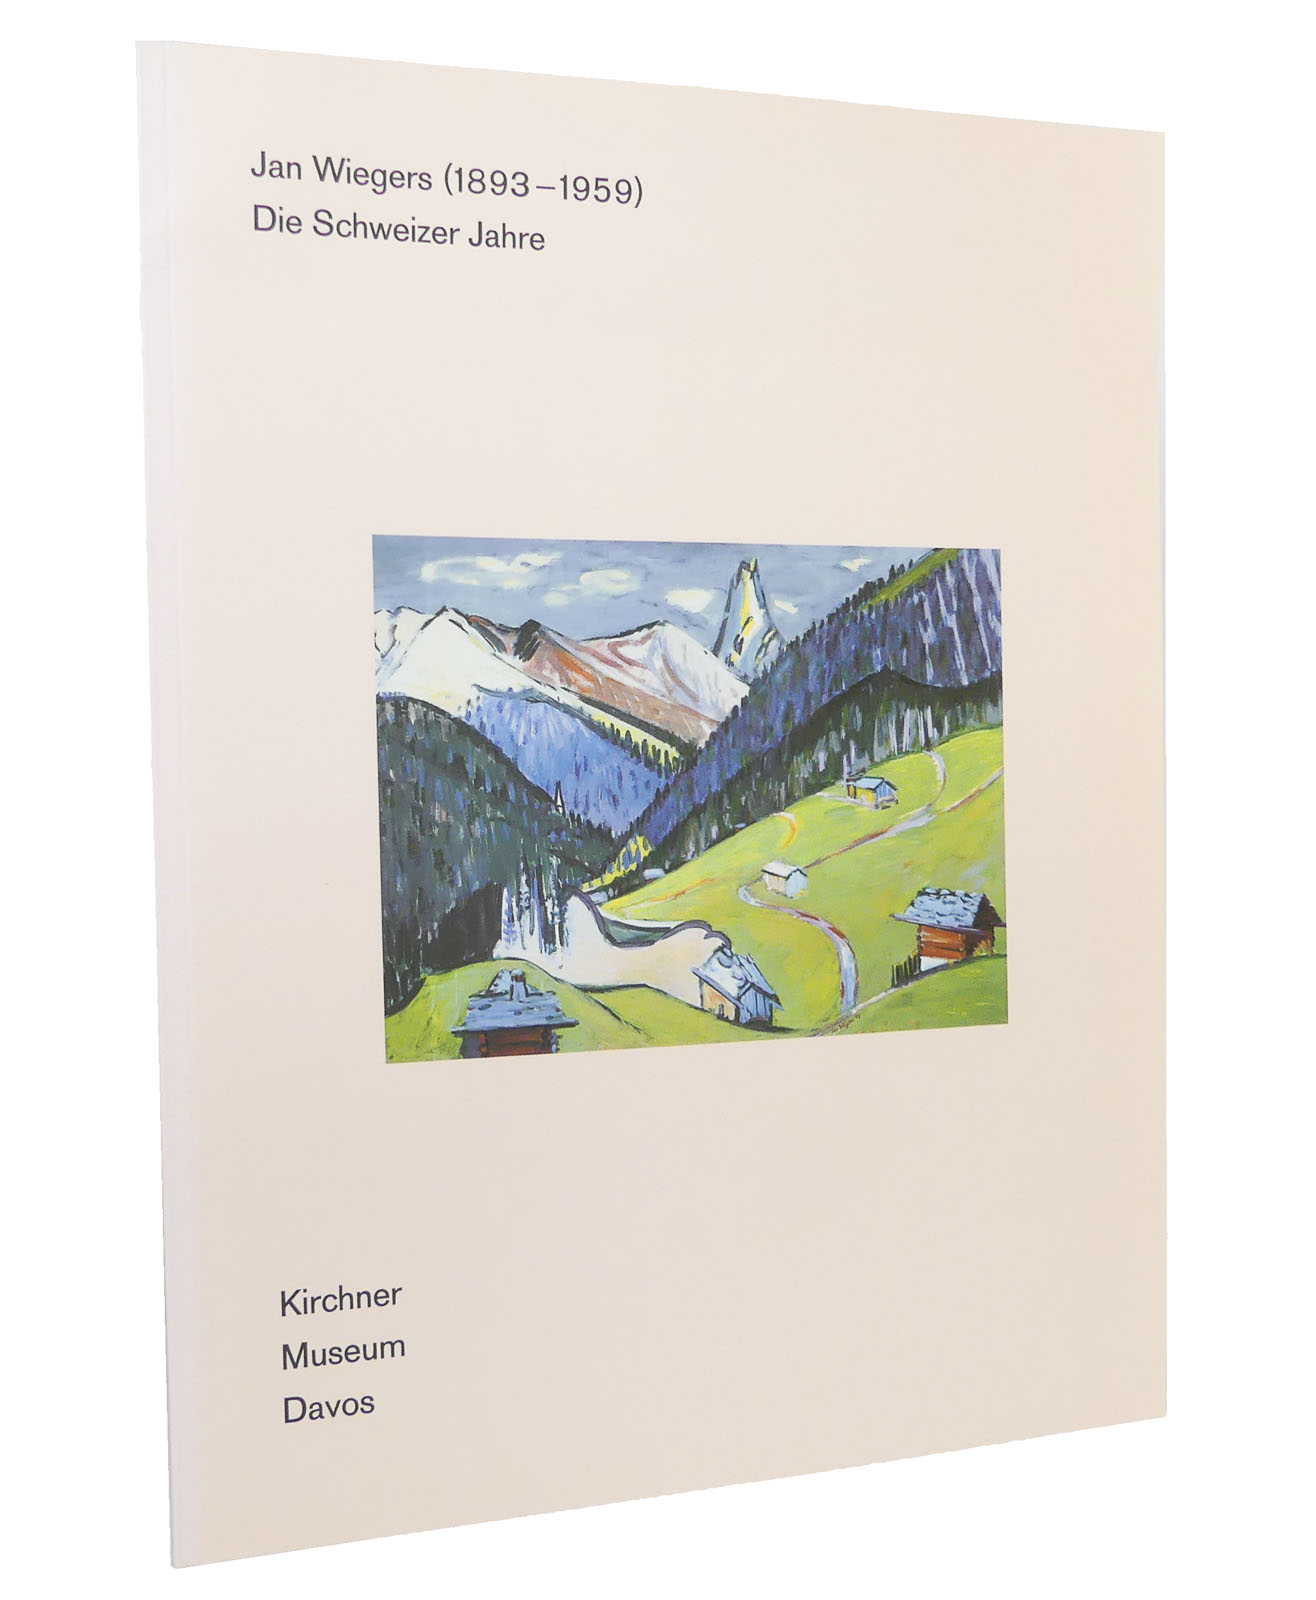 Jan Wiegers (1893-1959) - Die Schweizer Jahre : Katalog anlässlich der gleichnamigen Ausstellung im Kirchner-Museum Davos vom 2. Juni bis 27. Oktober 2002 - Scotti, Roland [Hg.]; Wiegers, Jan [Künstler]